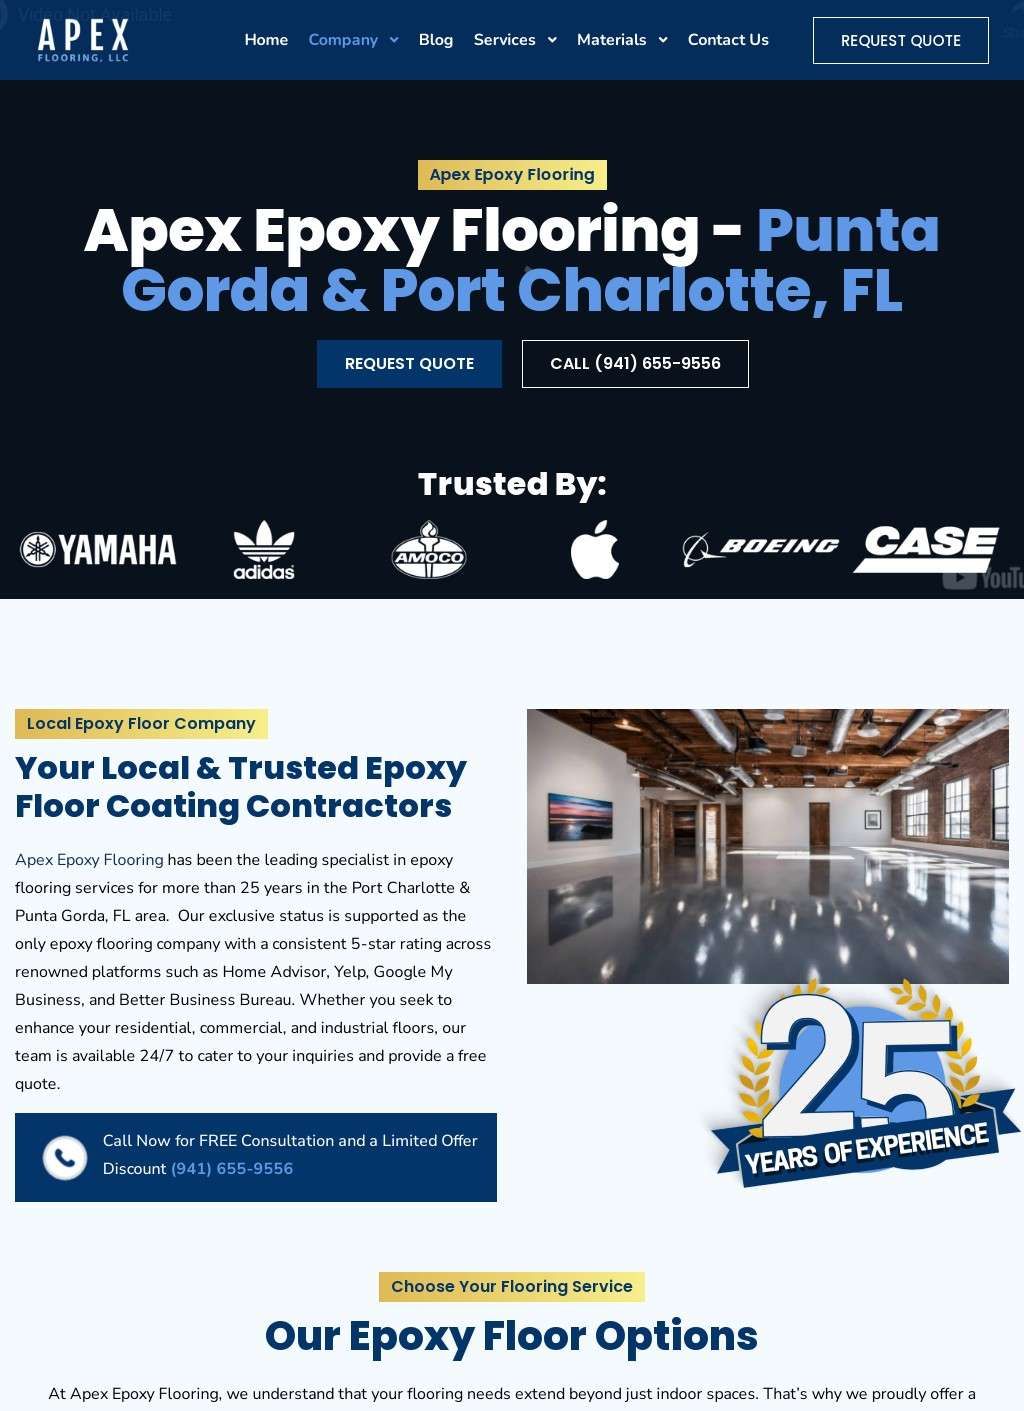 Apex Epoxy Flooring - Punta Gorda & Port Charlotte, FL